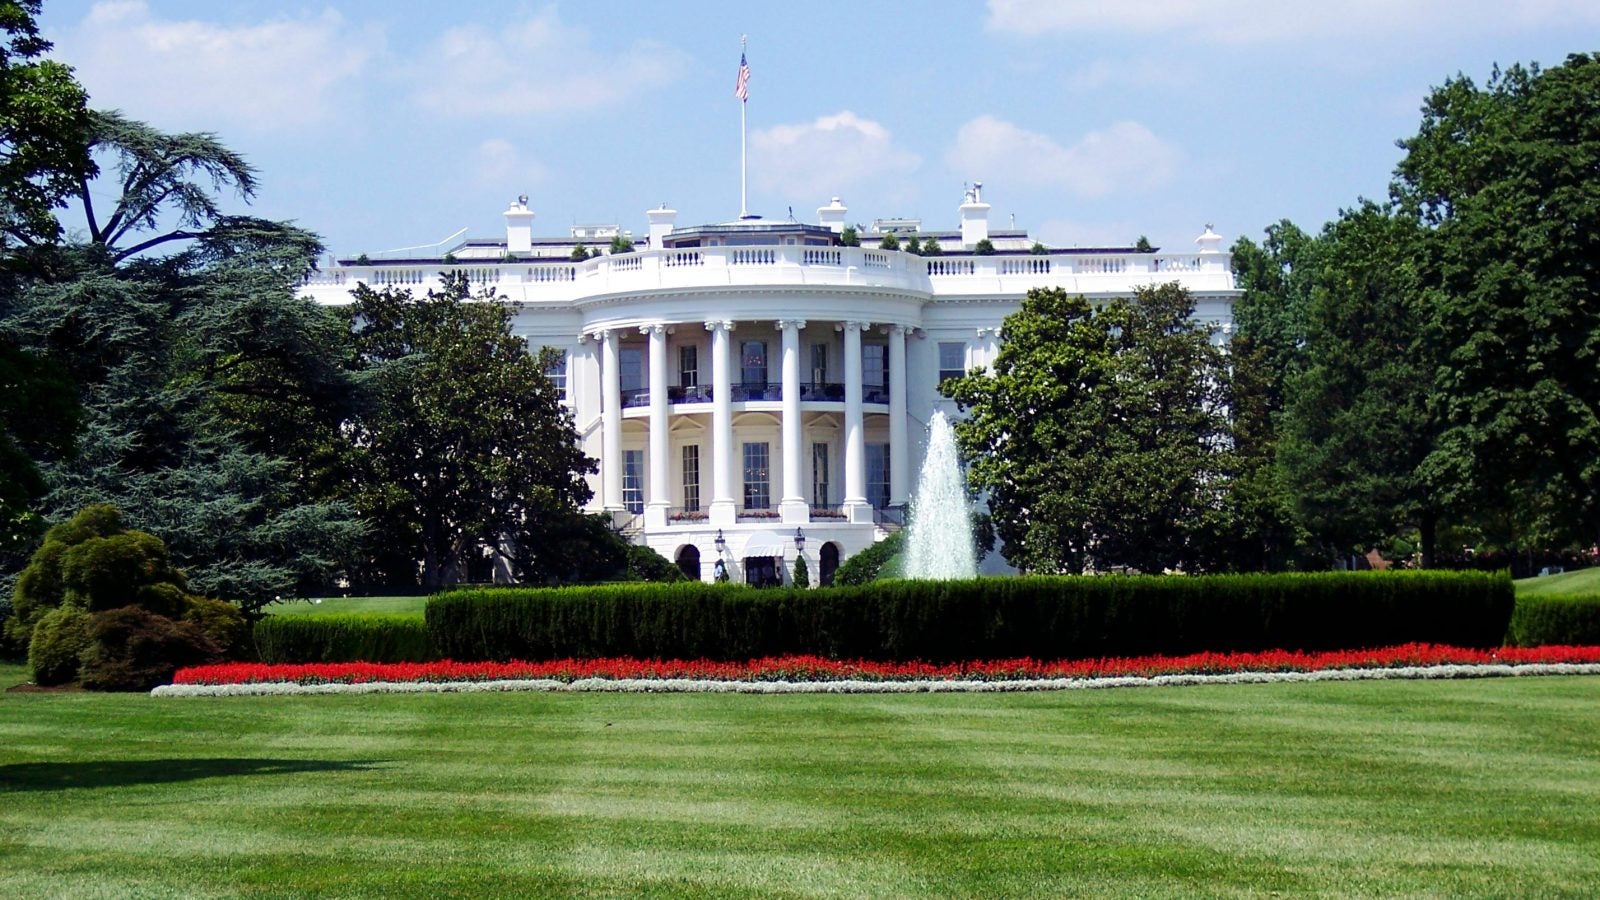 White House image.